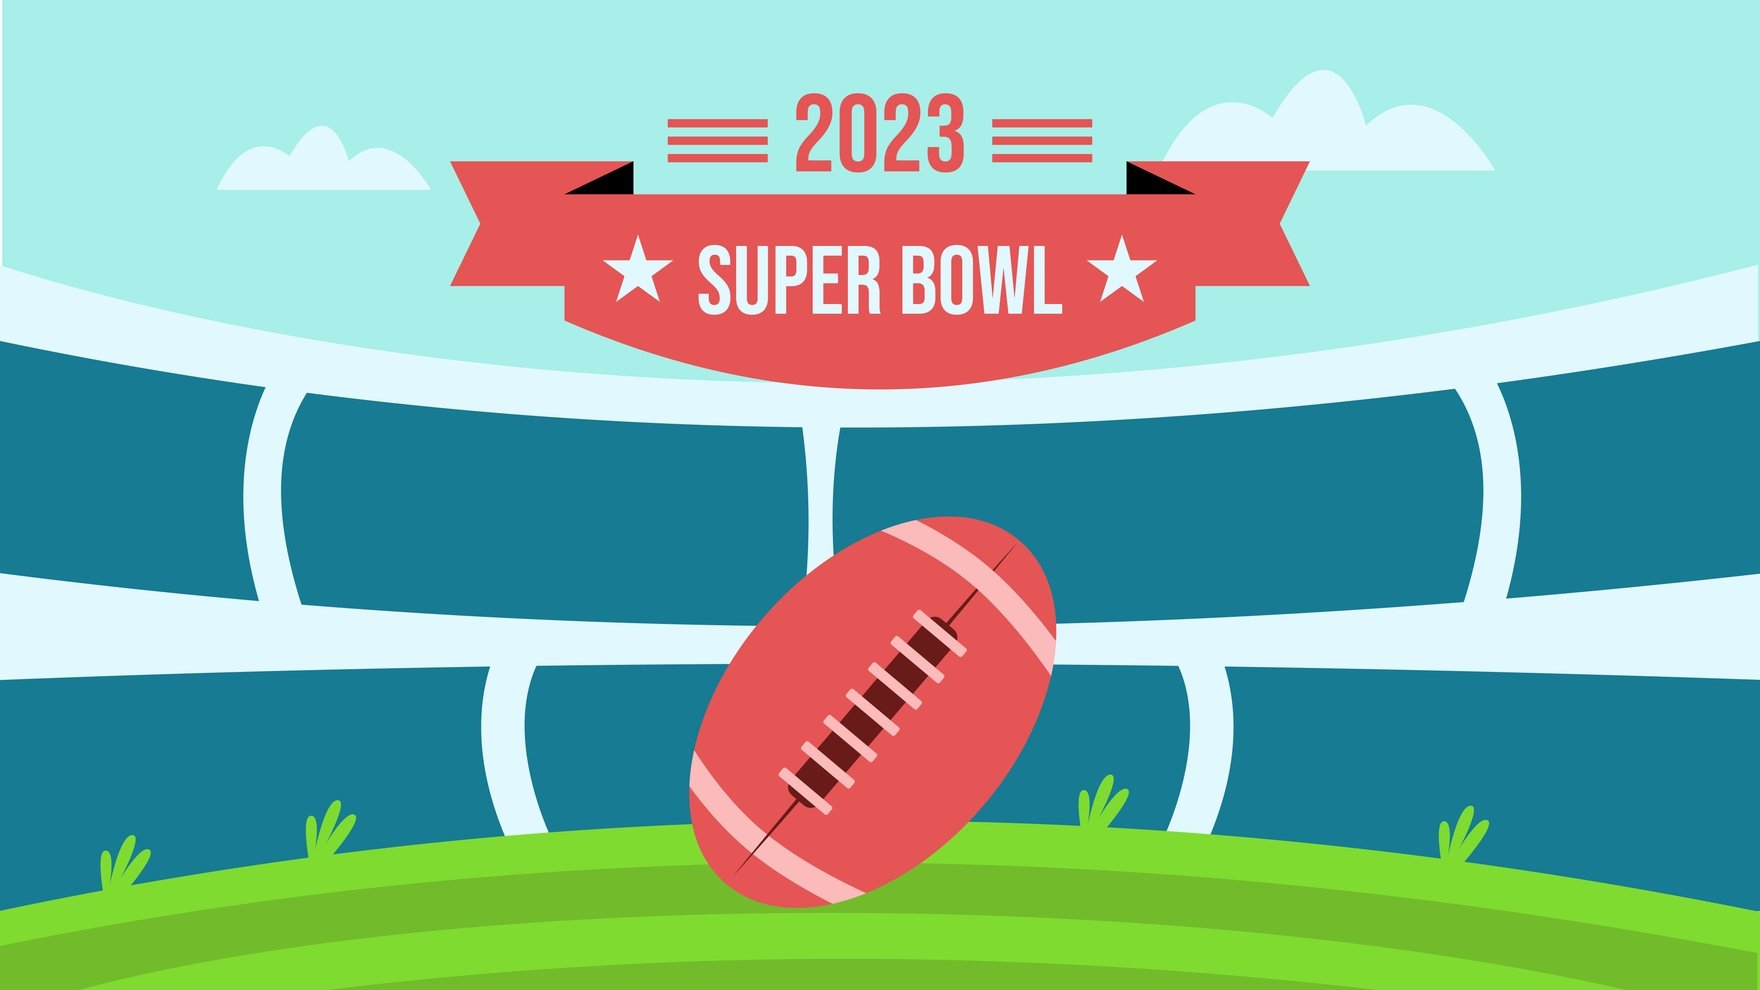 Super Bowl 2023 Background